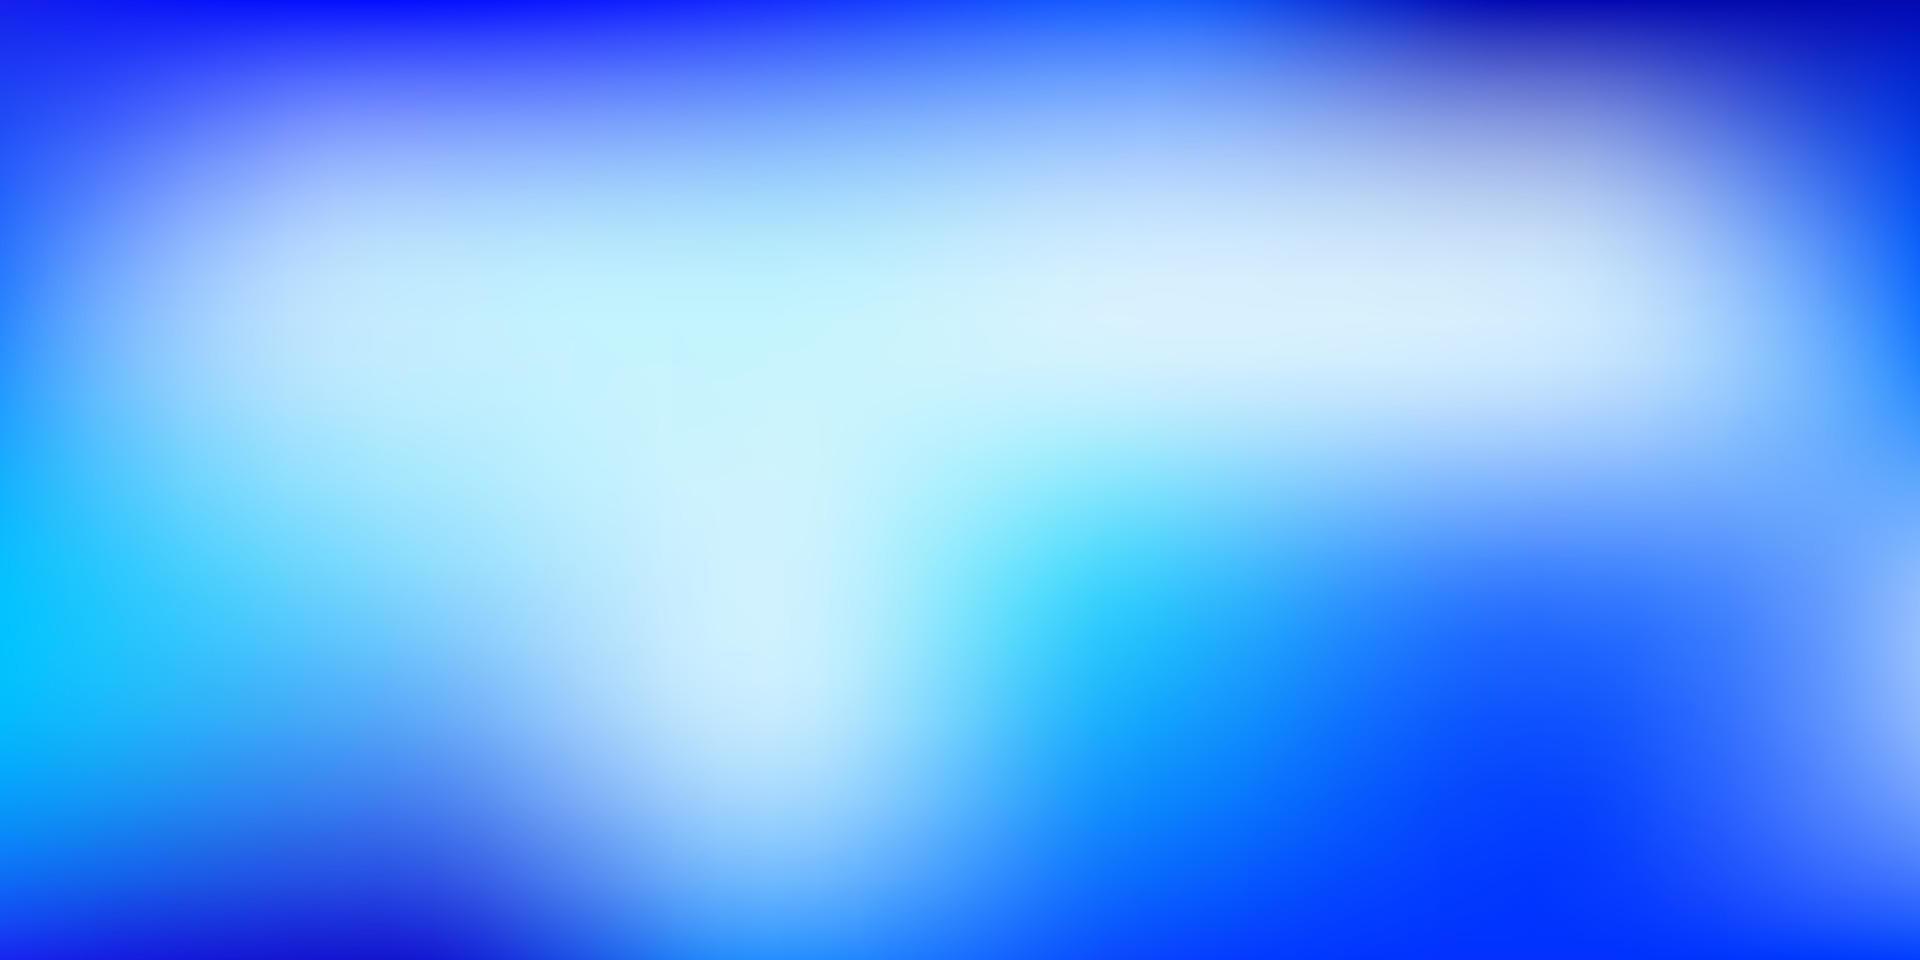 ljusrosa, blå vektor gradient oskärpa mönster.